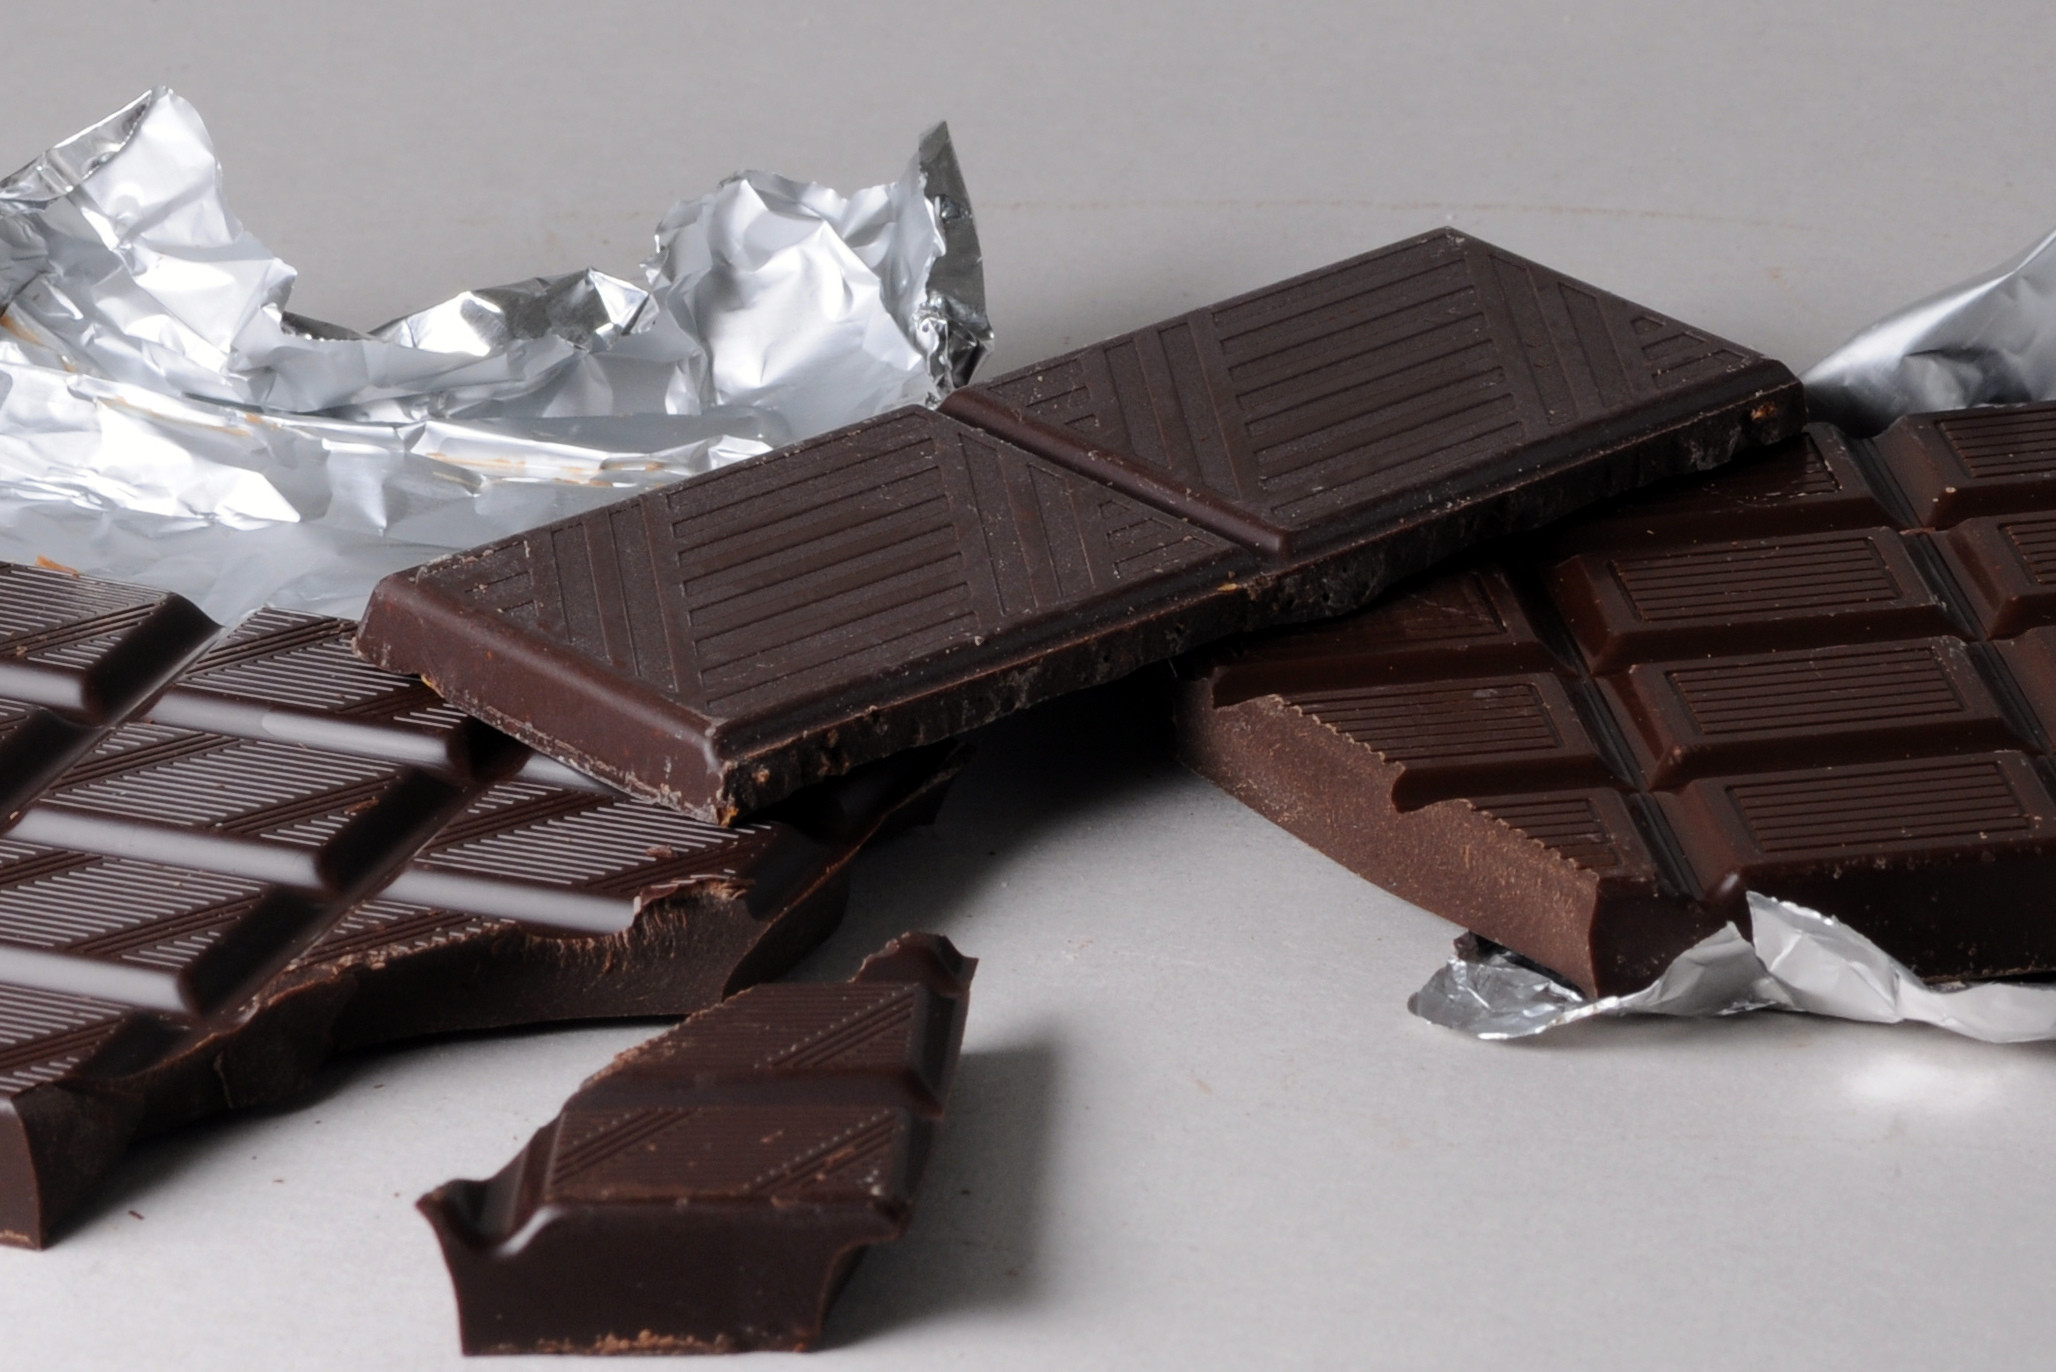 Ο ΕΦΕΤ αποσύρει σοκολάτες μεγάλης αλυσίδας ζαχαροπλαστείων